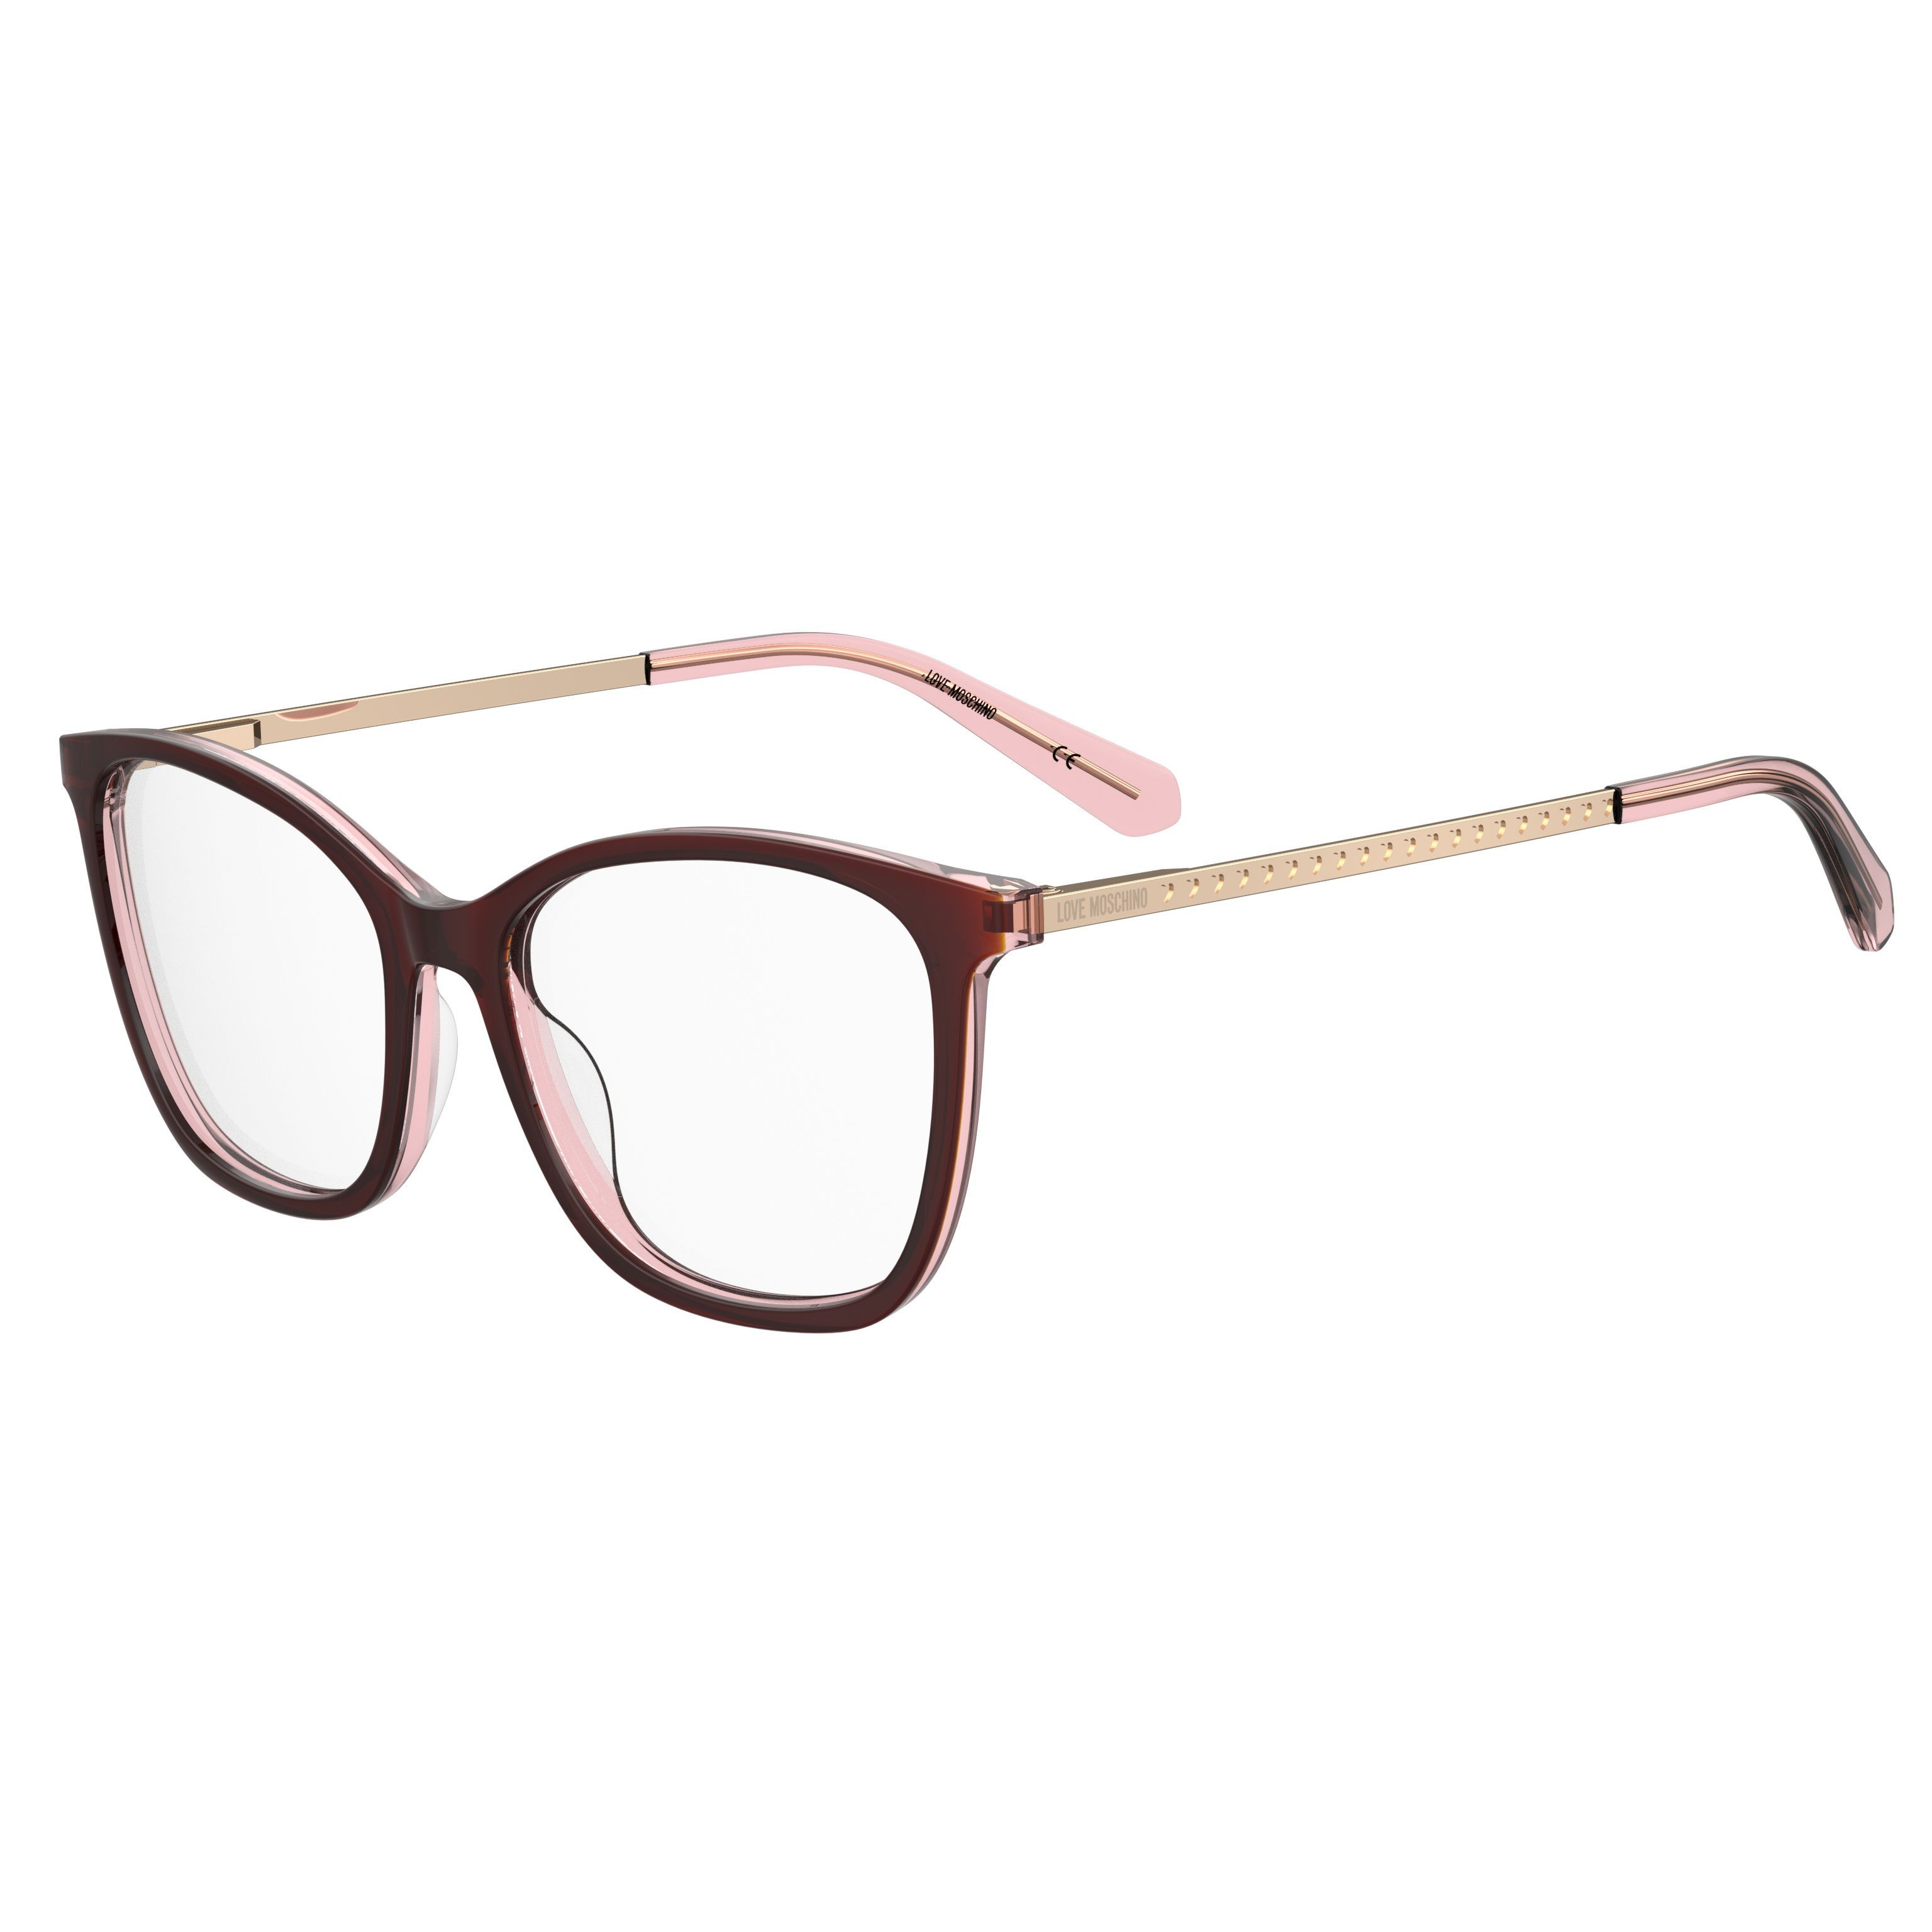 MOL622 Square Eyeglasses LHF - size 54